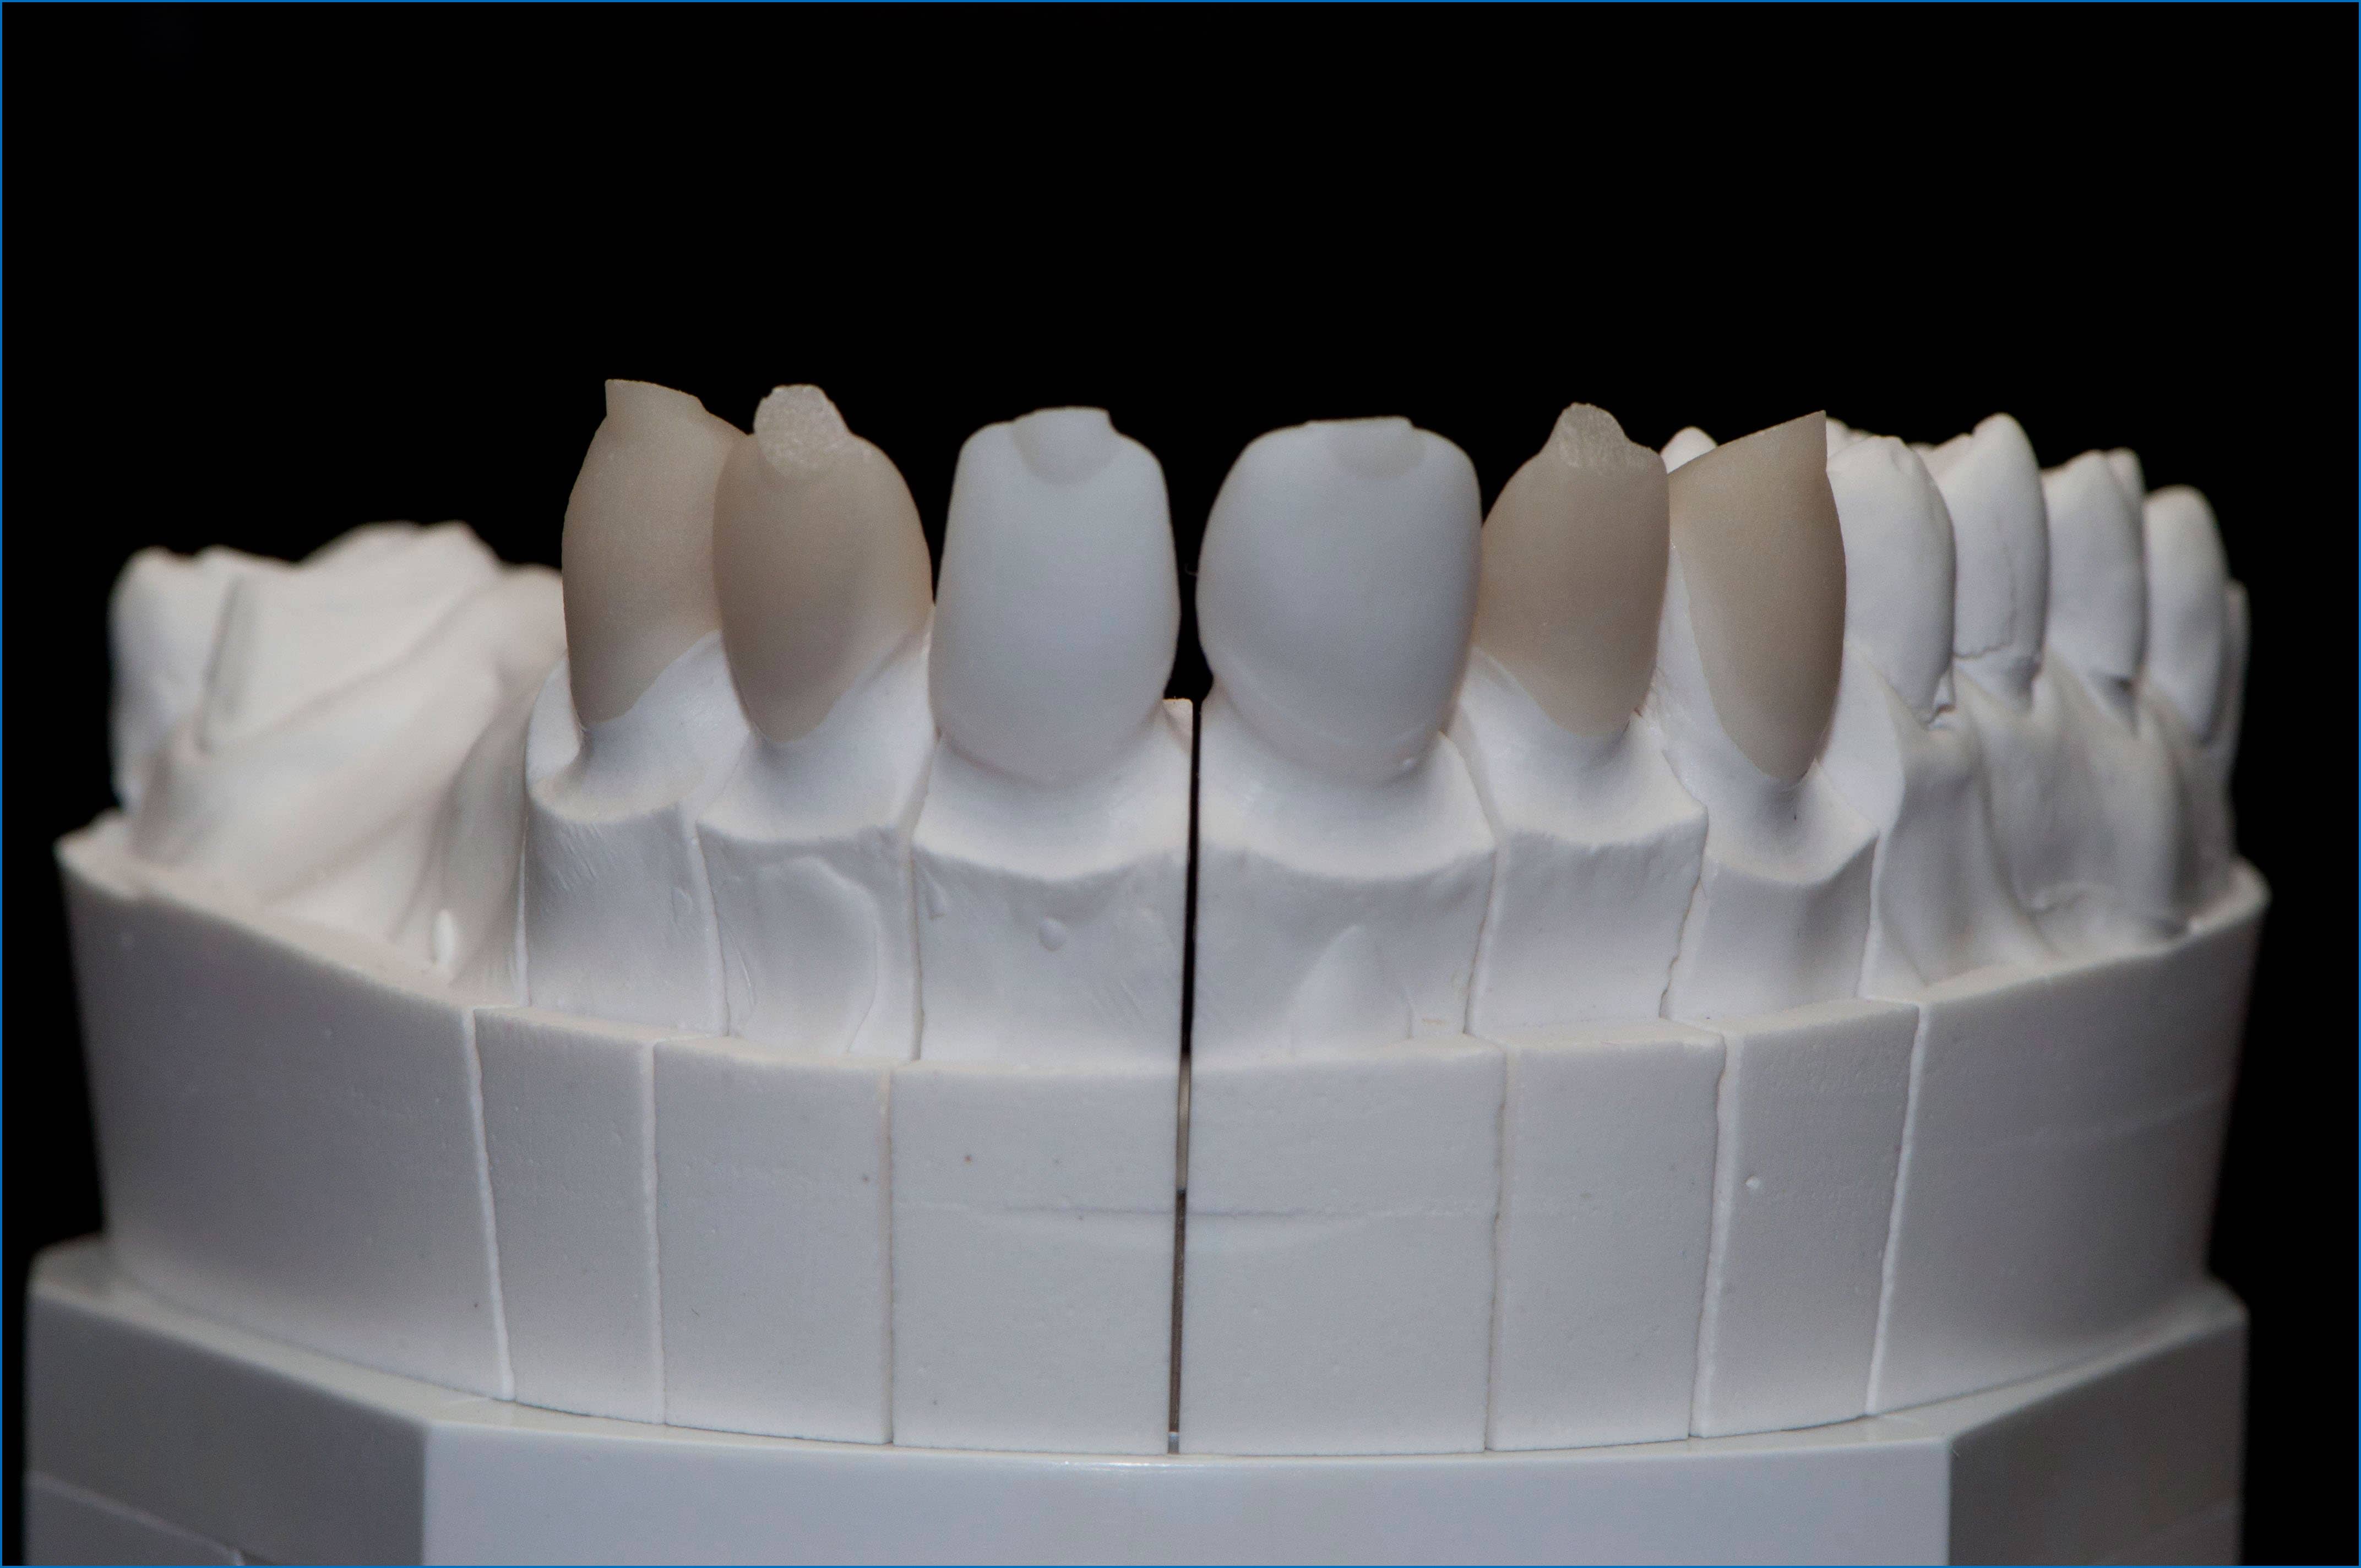 Купить материал для зубов. Моделировочные материалы в ортопедической стоматологии. Фиксирующие материалы в ортопедической стоматологии. Формовочные материалы в ортопедической стоматологии. Эластичные базисные материалы в ортопедической стоматологии.